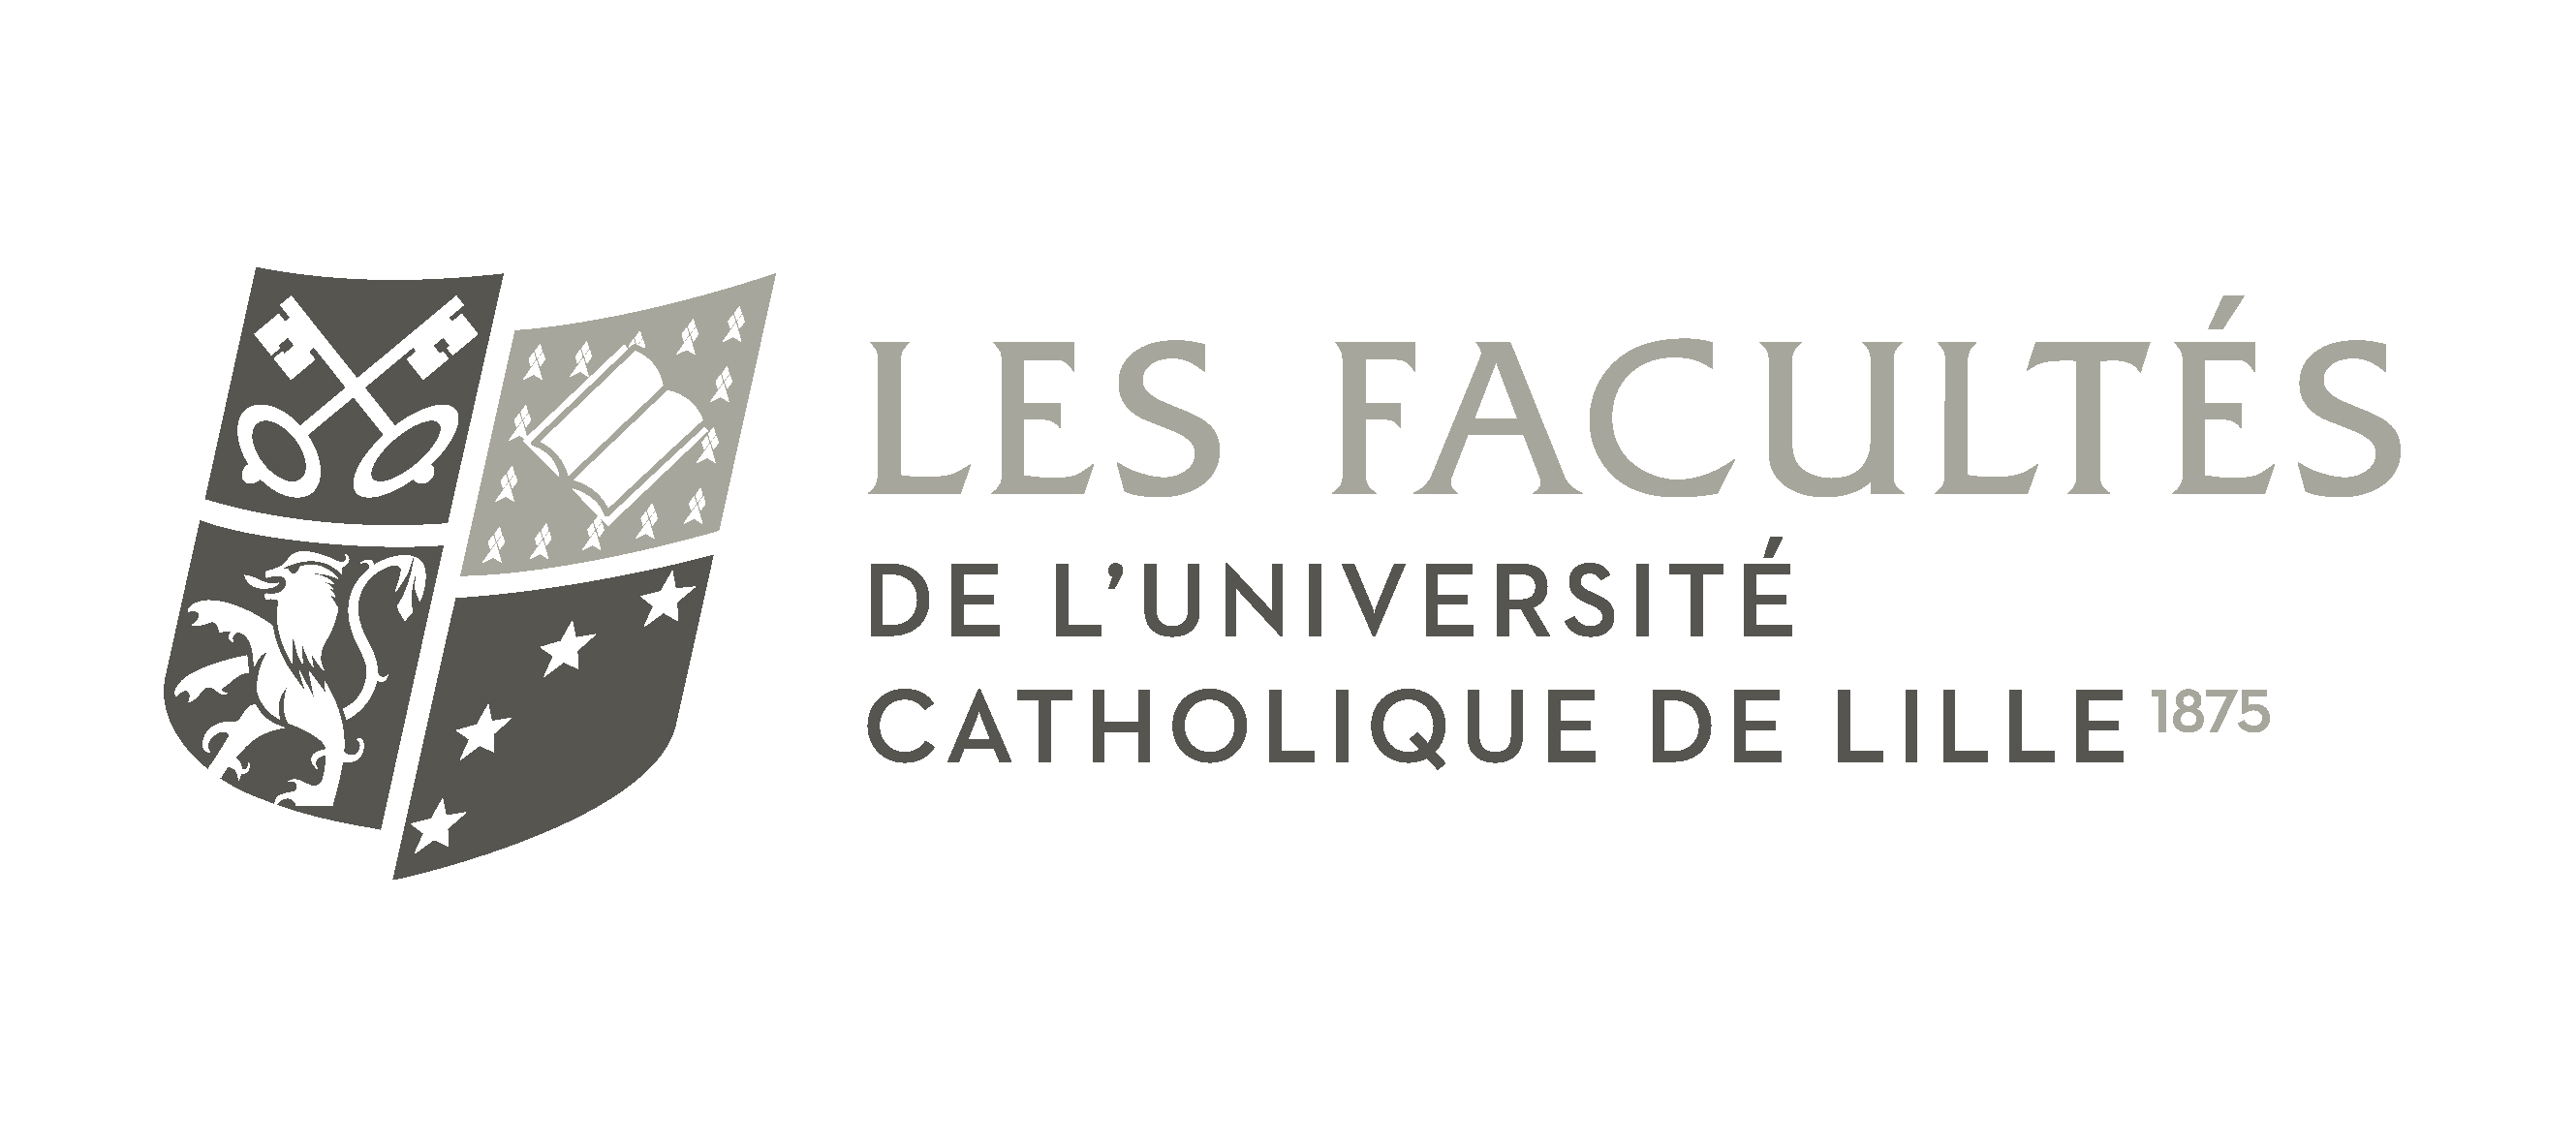 Les Facultés de l'Université Catholique de Lille